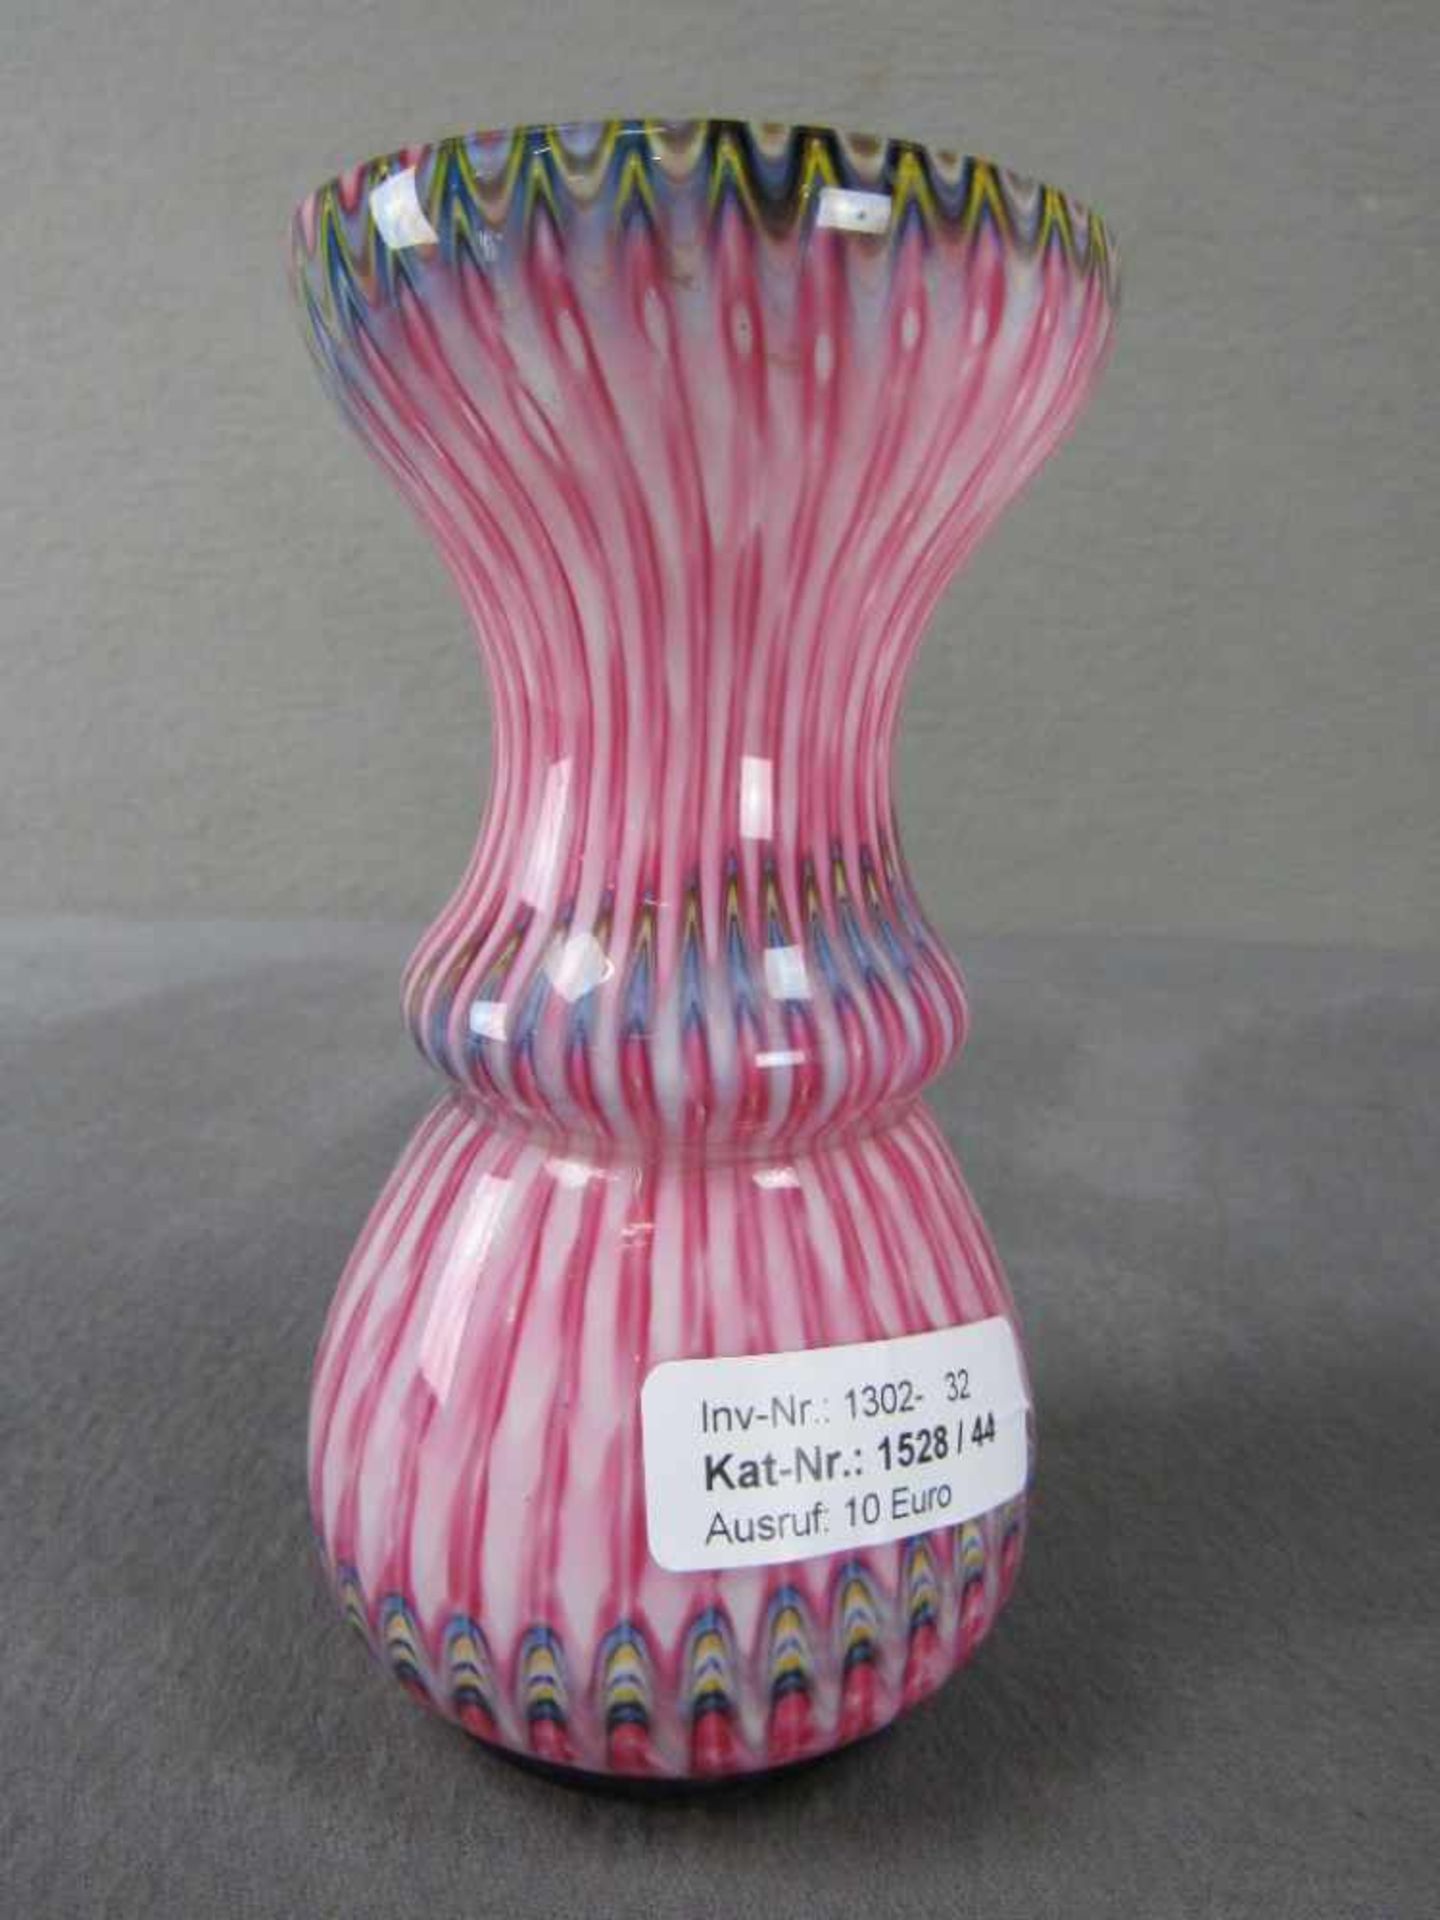 Glasvase buntes Glas mit Farbeinschmelzungen evtl. Murano 16cm hoch - Image 2 of 4